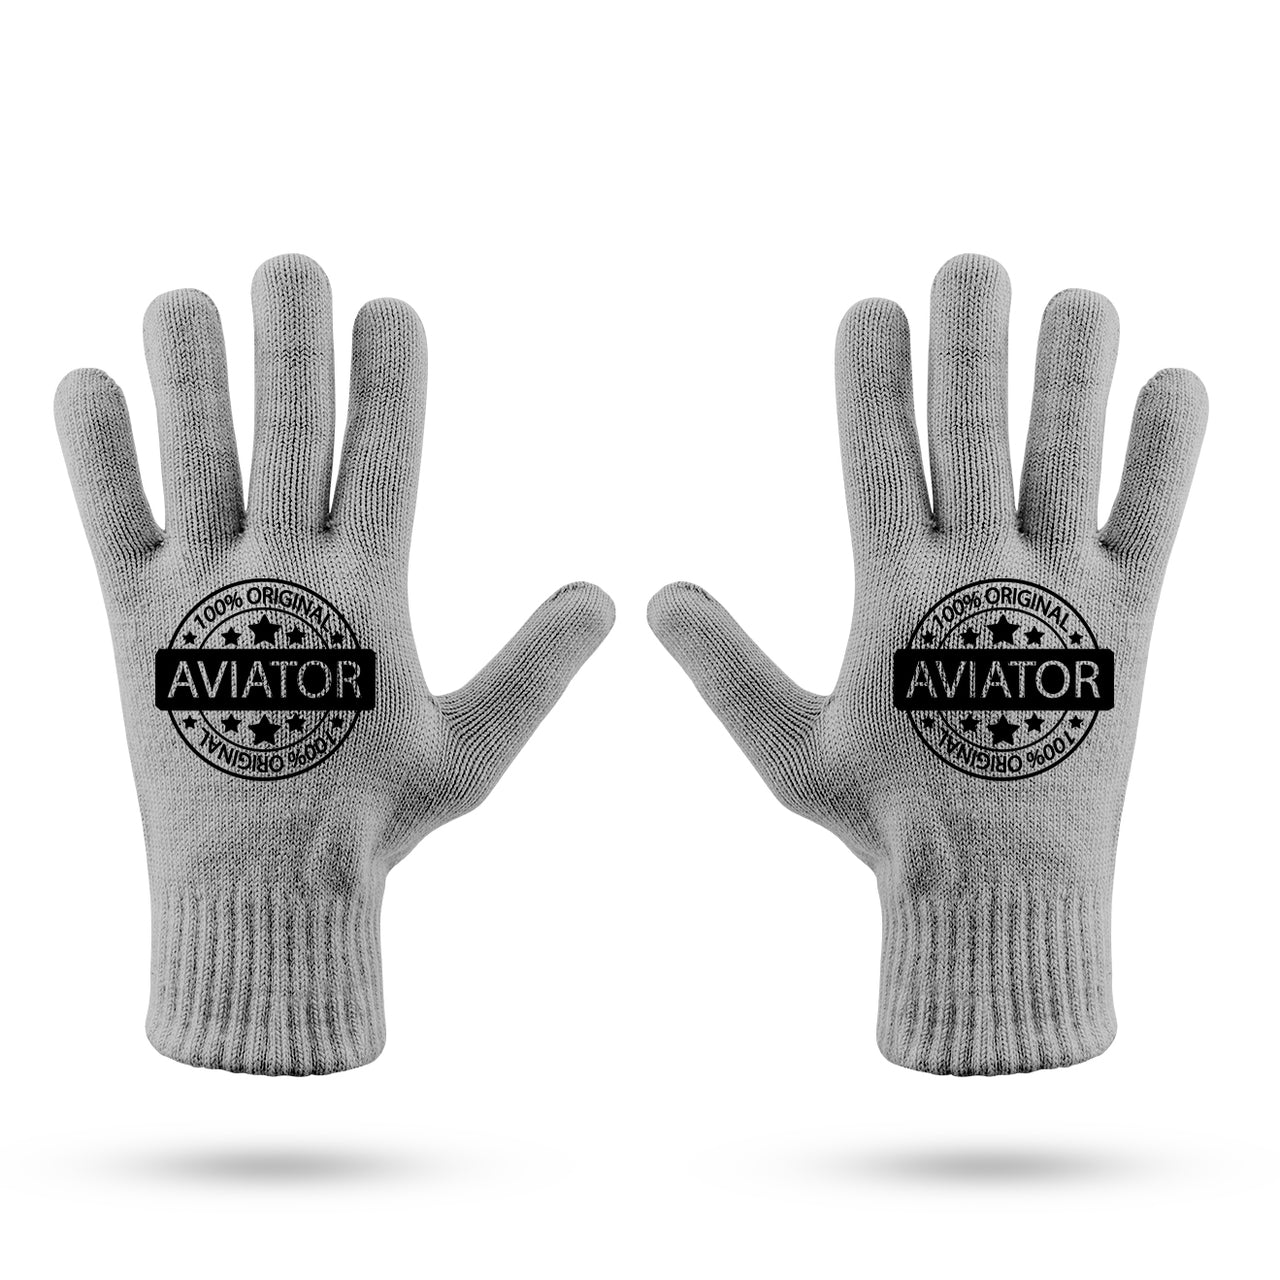 %100 Original Aviator Designed Gloves